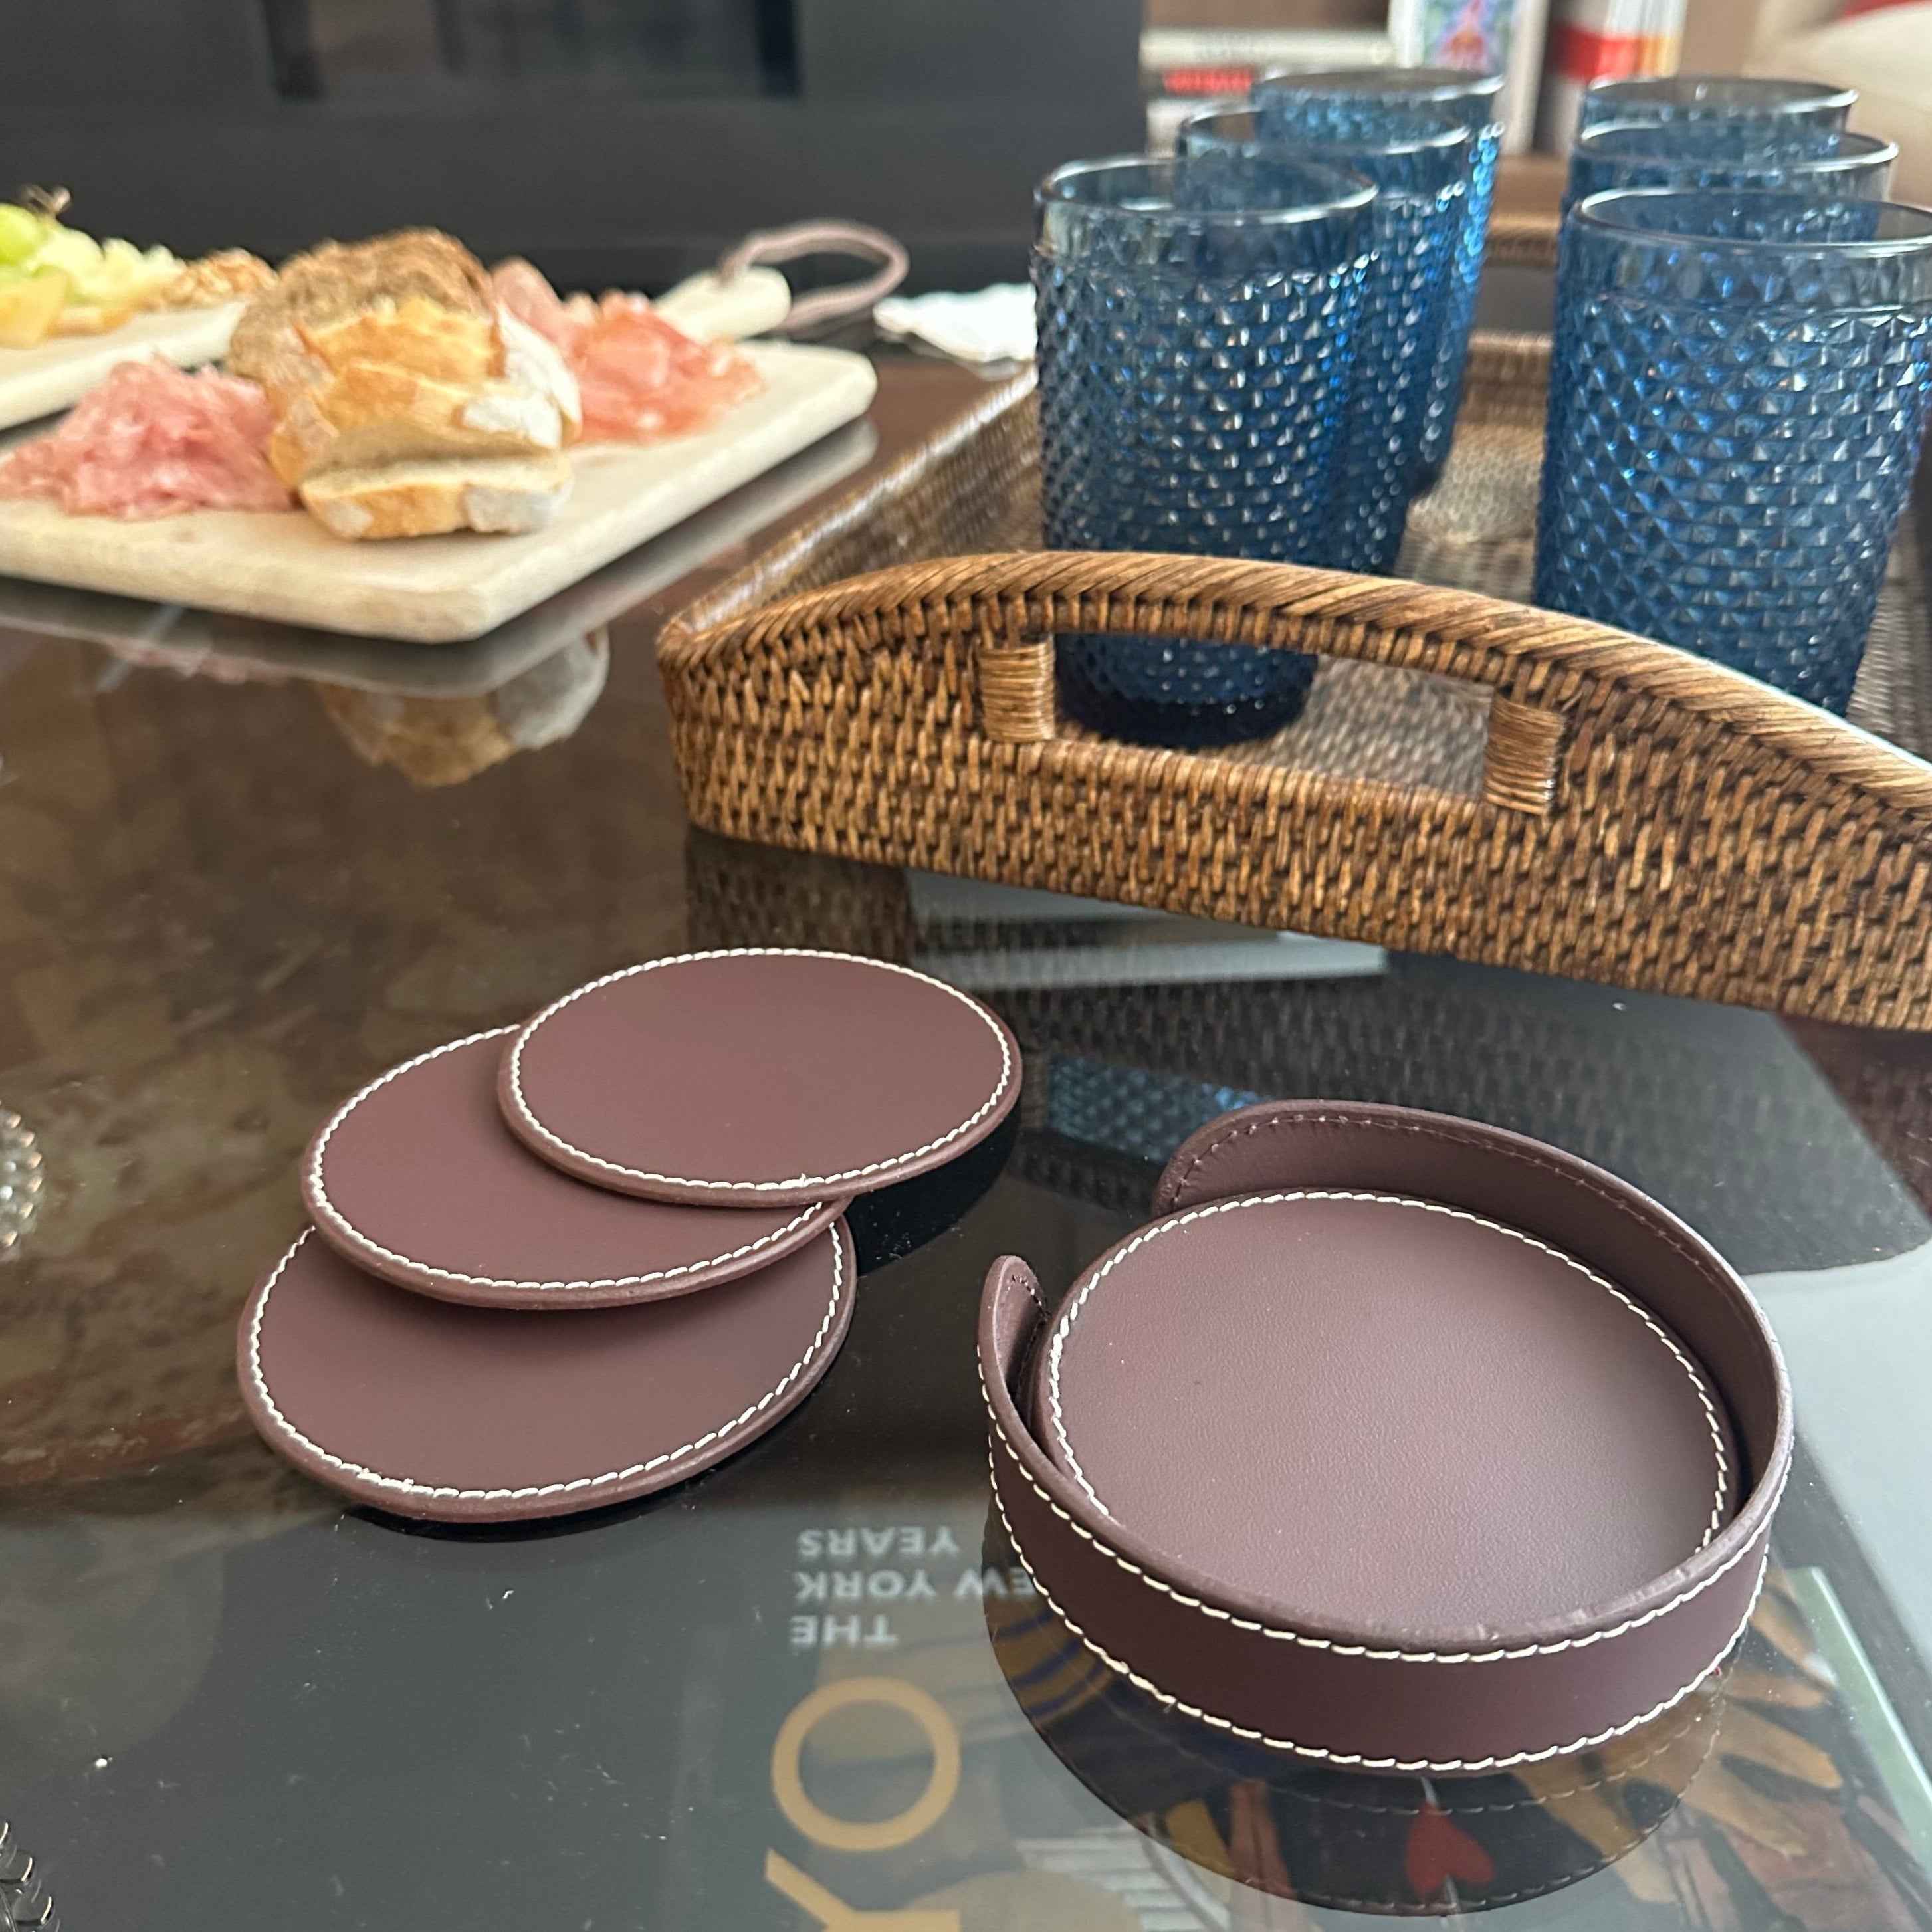 Burgundy Leather Coasters (6 units)